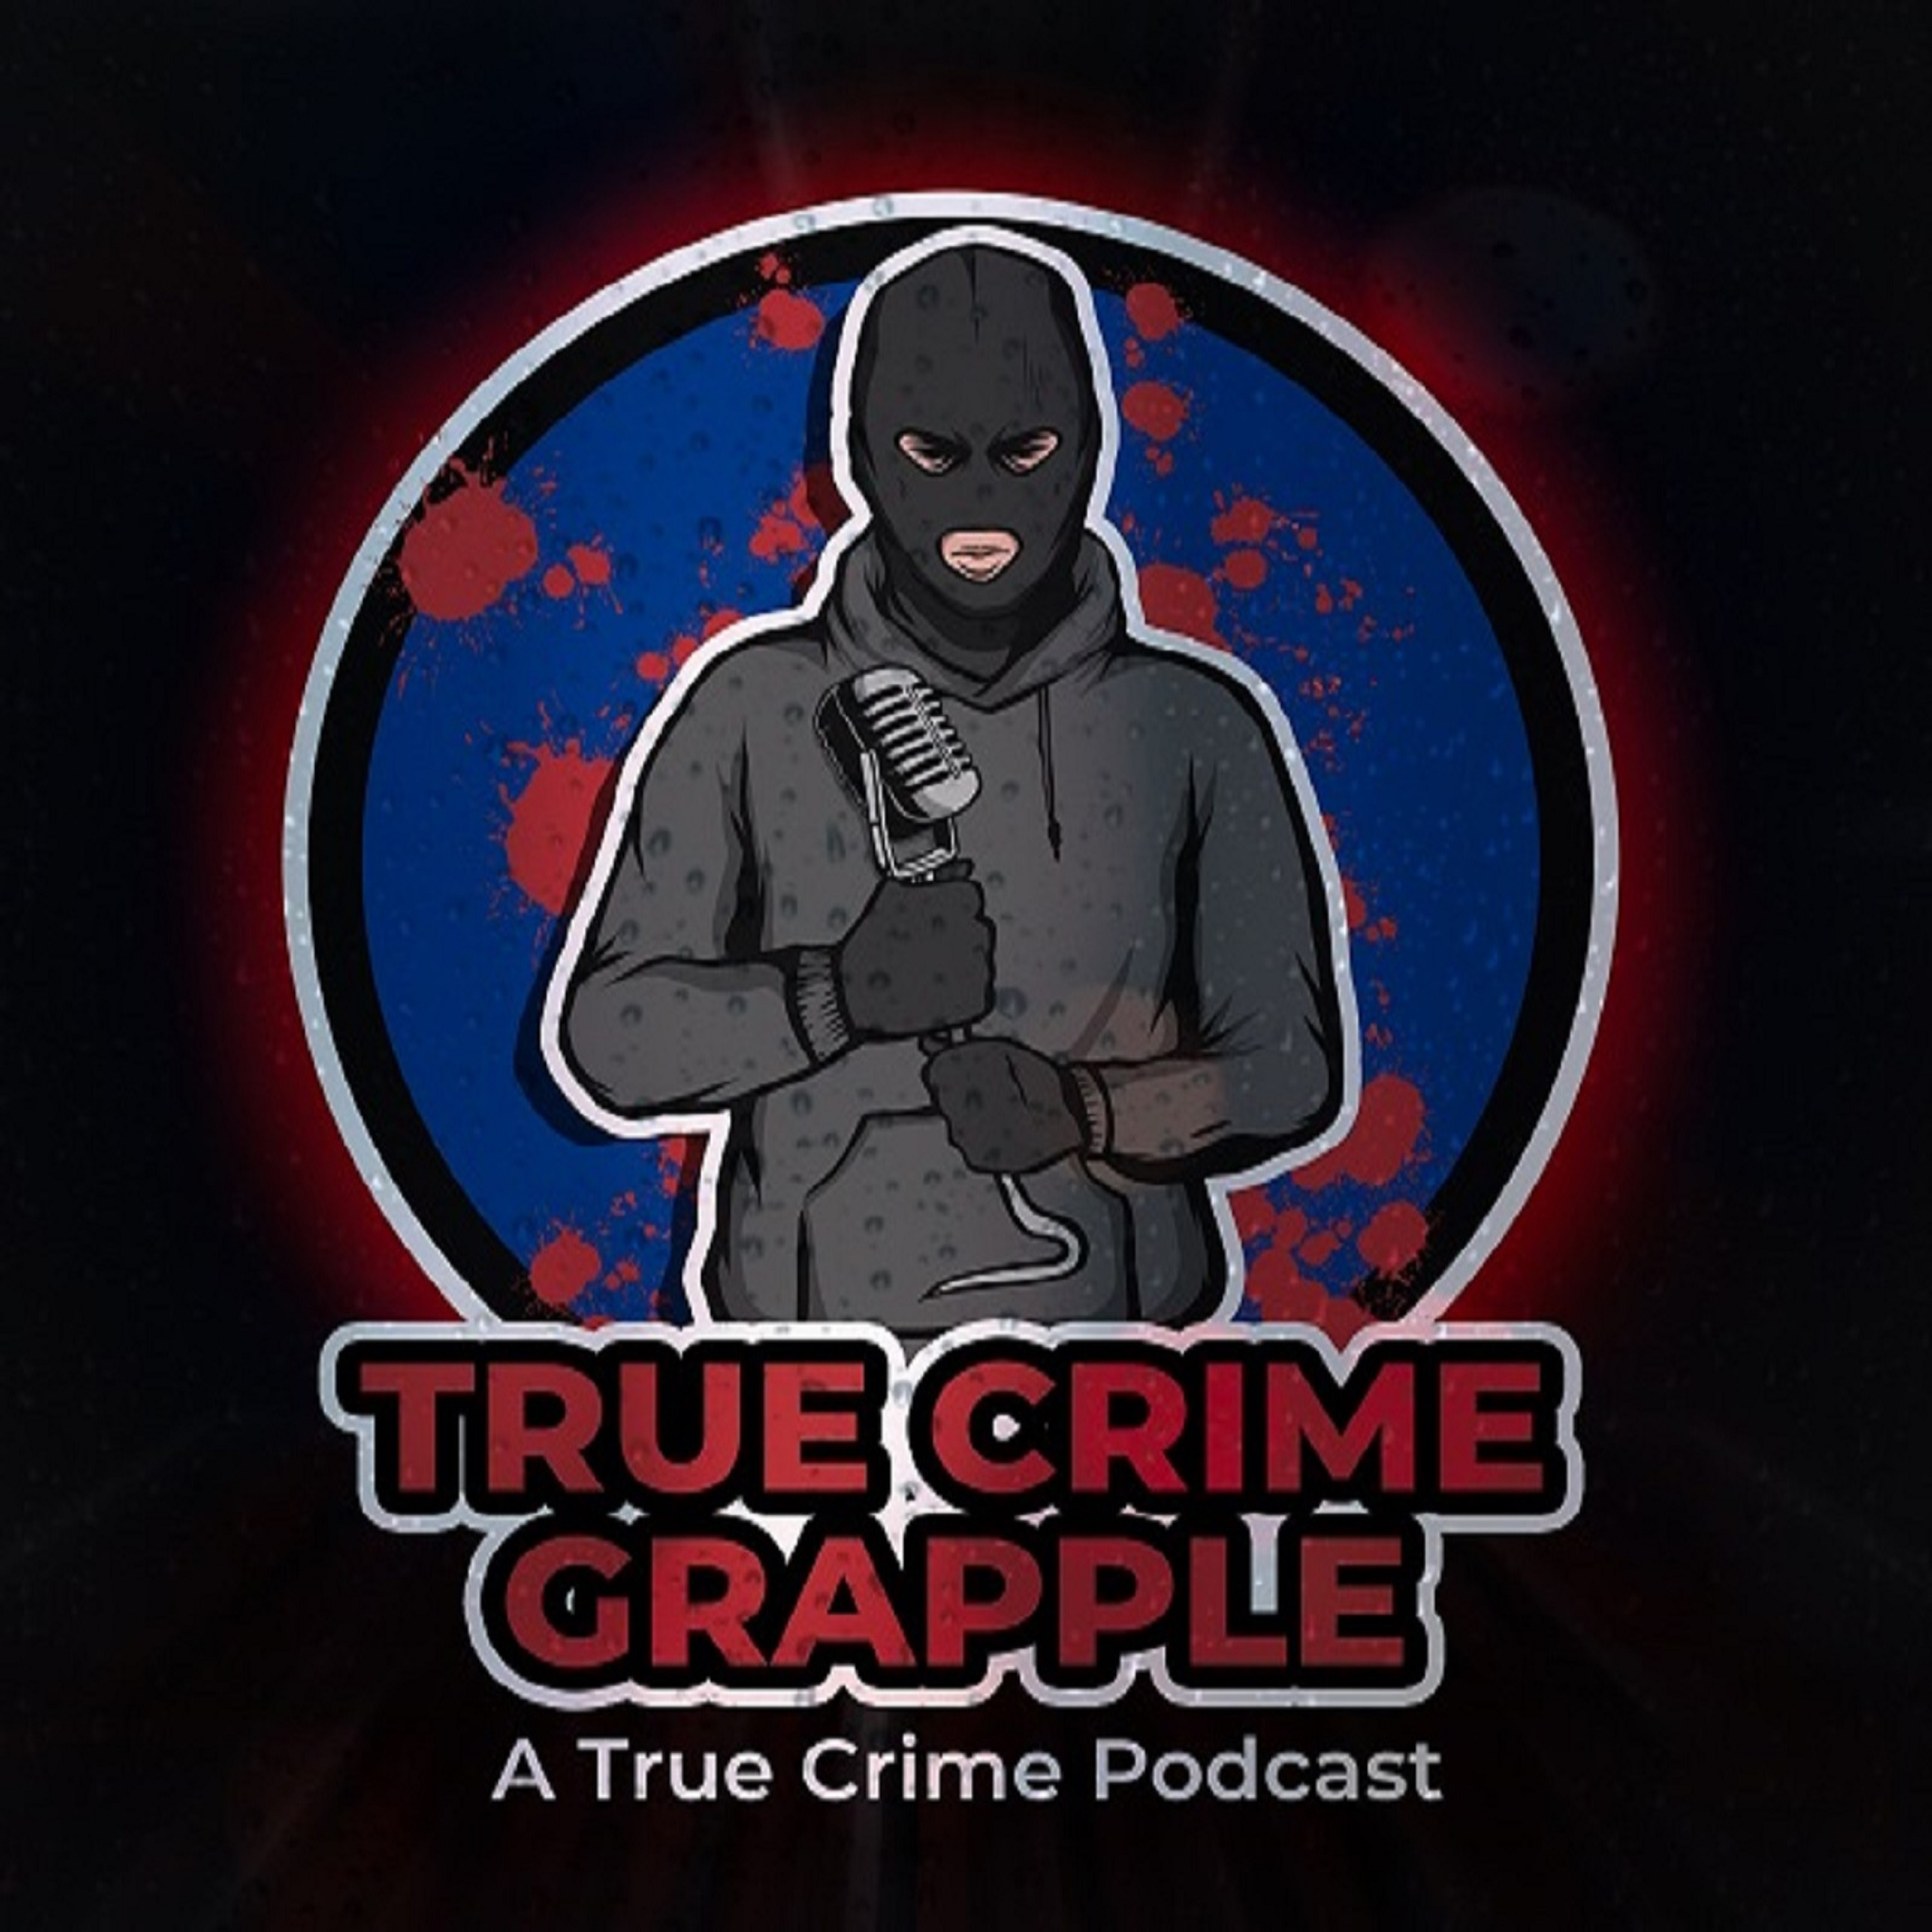 True crime grapple